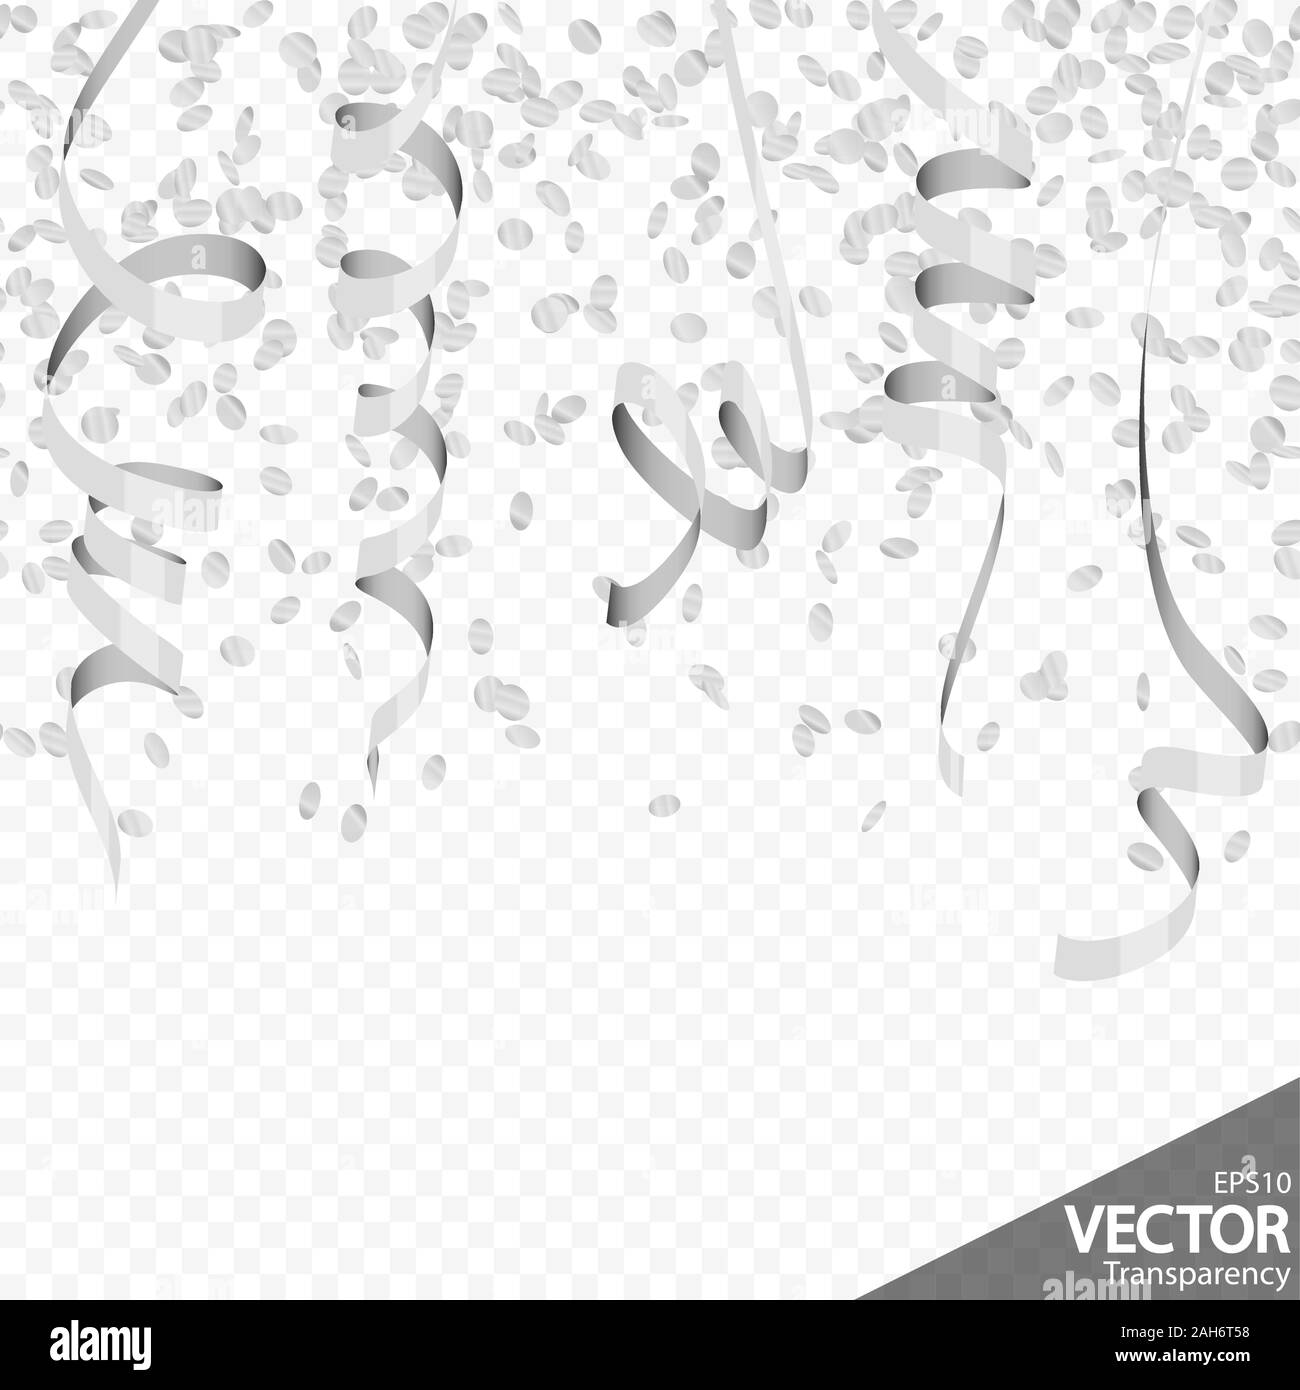 Abbildung: Nahtlose silberfarbene Konfetti und Luftschlangen Hintergrund für Party oder Karneval Nutzung mit Transparenz in Vektor Datei Stock Vektor